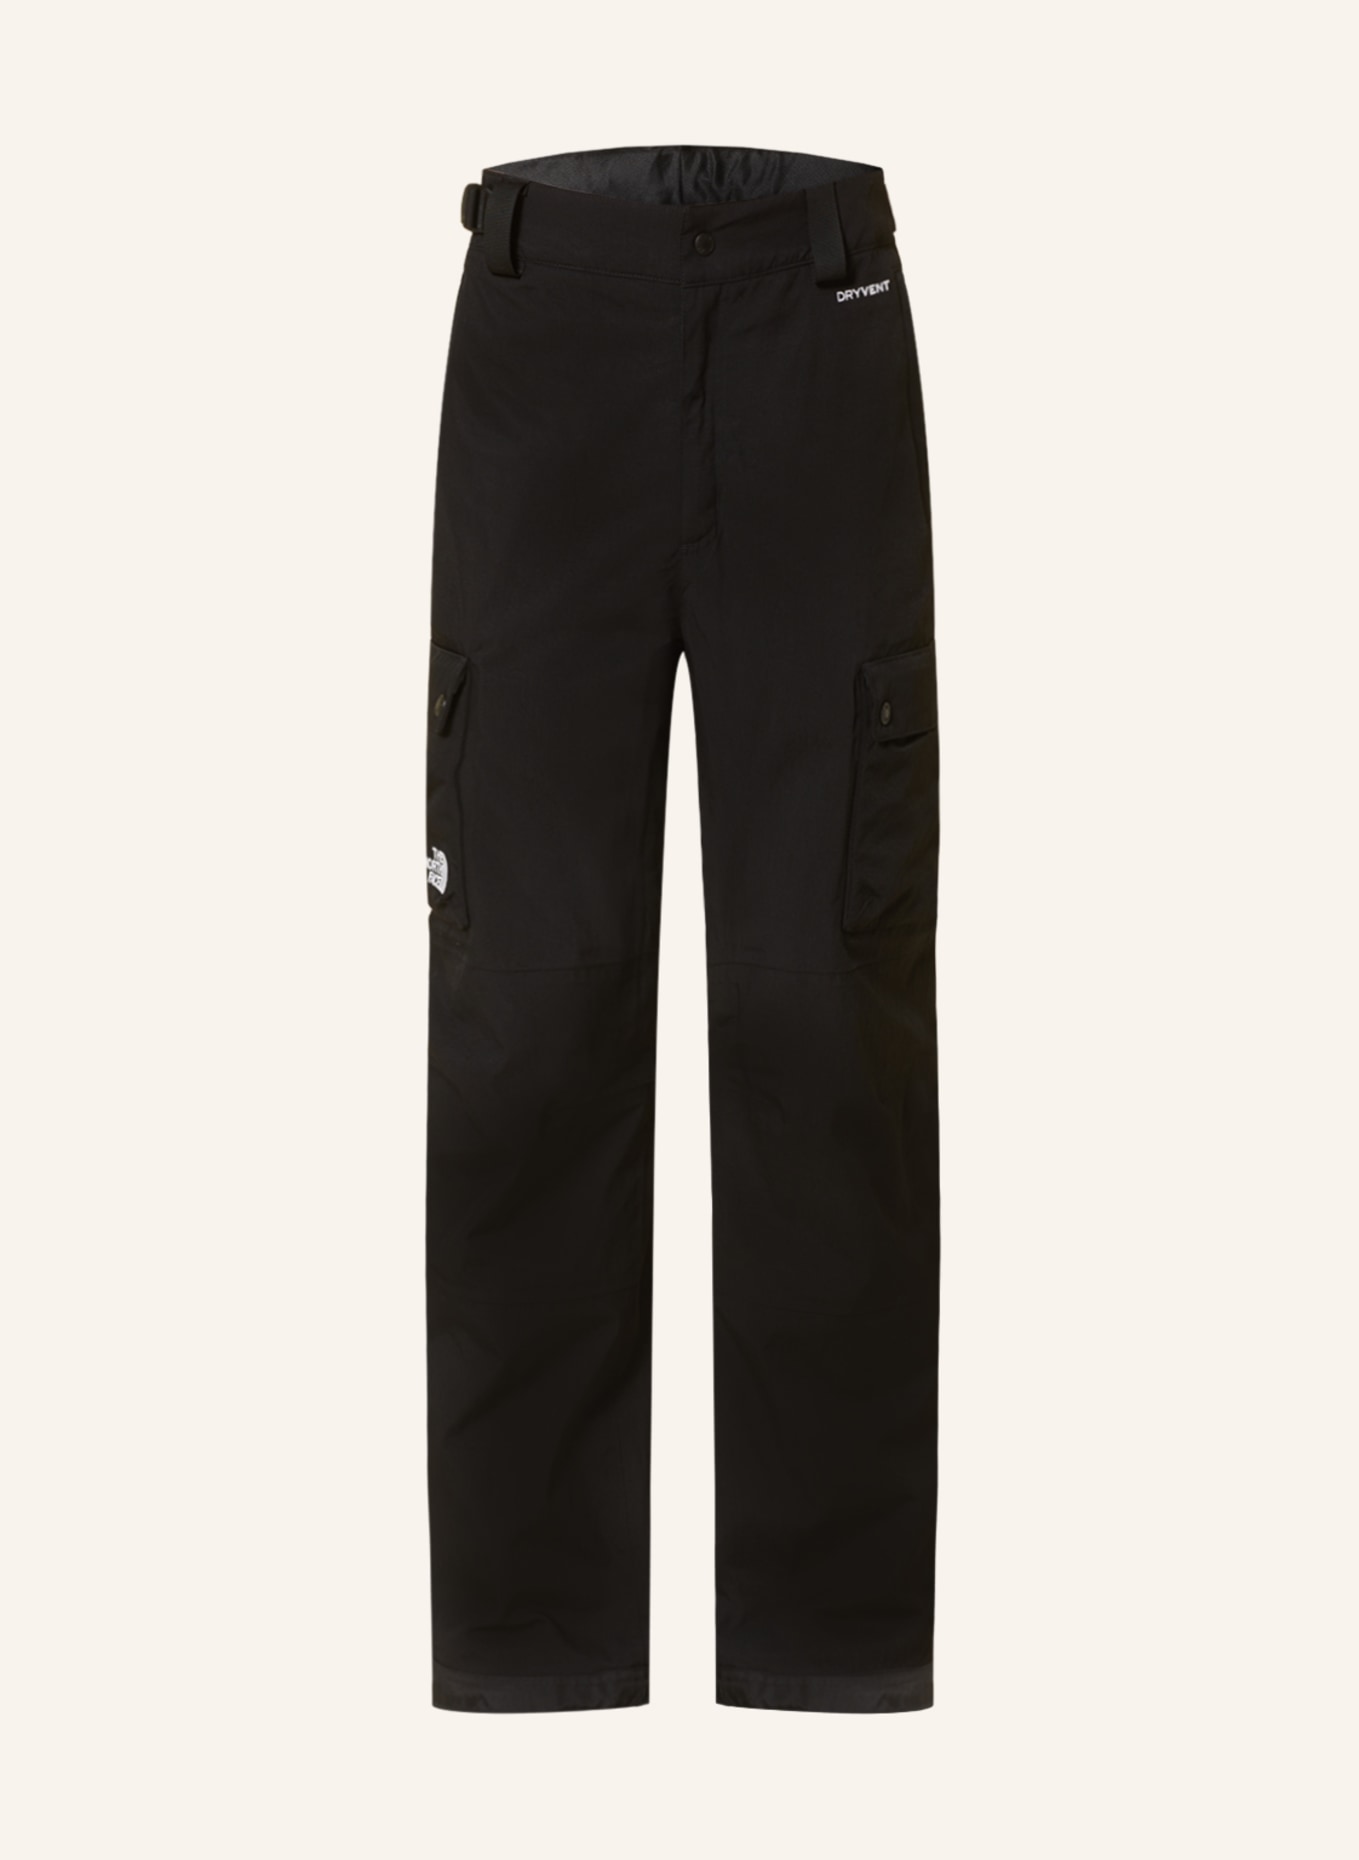 THE NORTH FACE Ski pants SLASHBACK, Color: BLACK (Image 1)